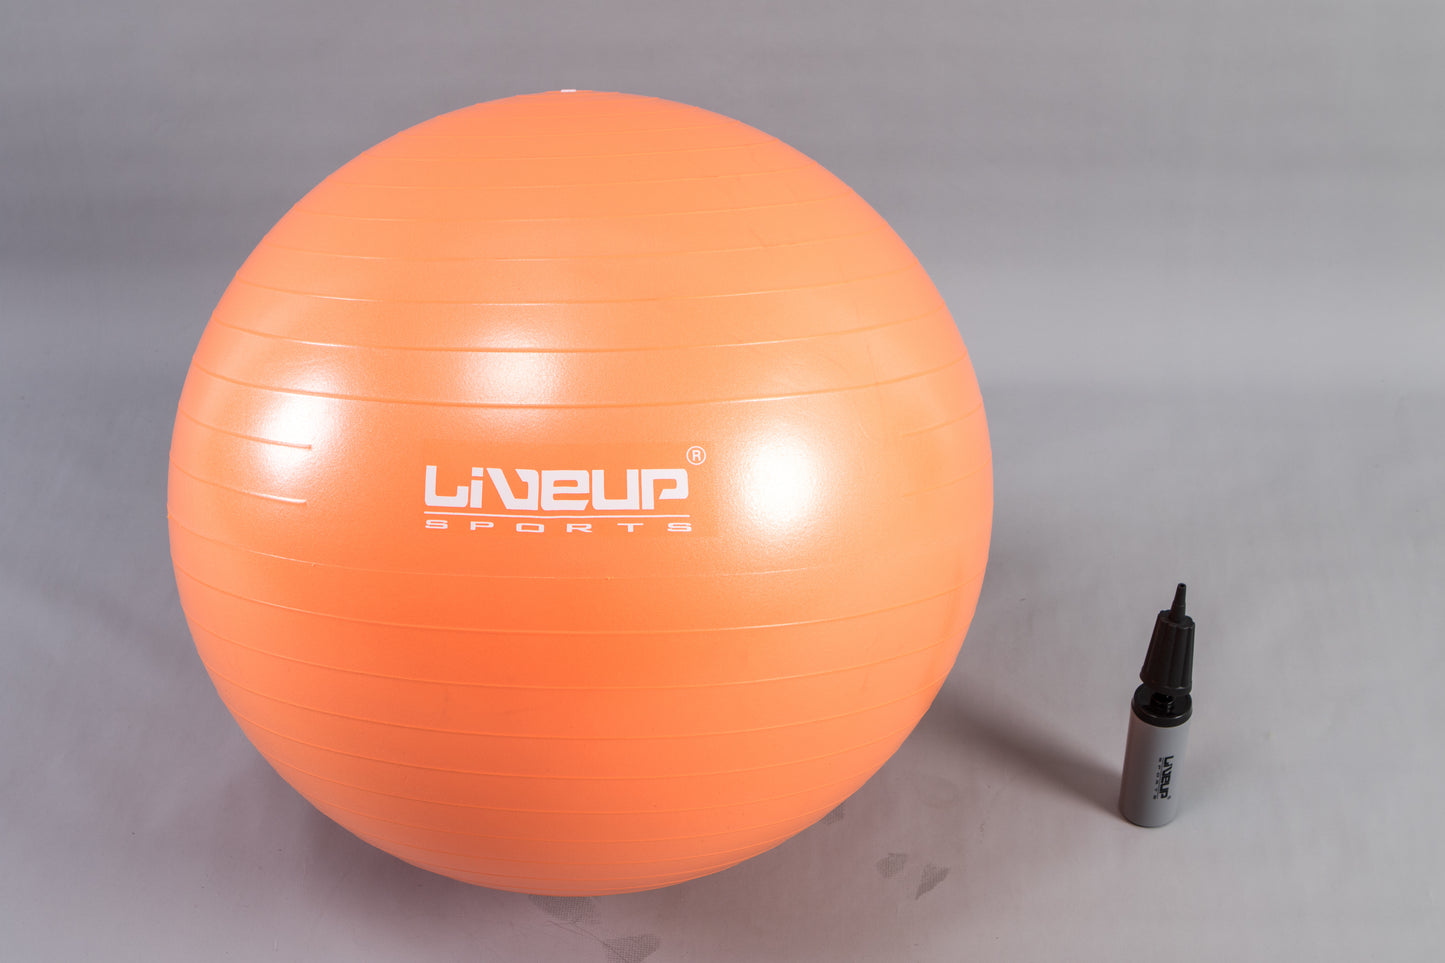 Liveup Gym Ball